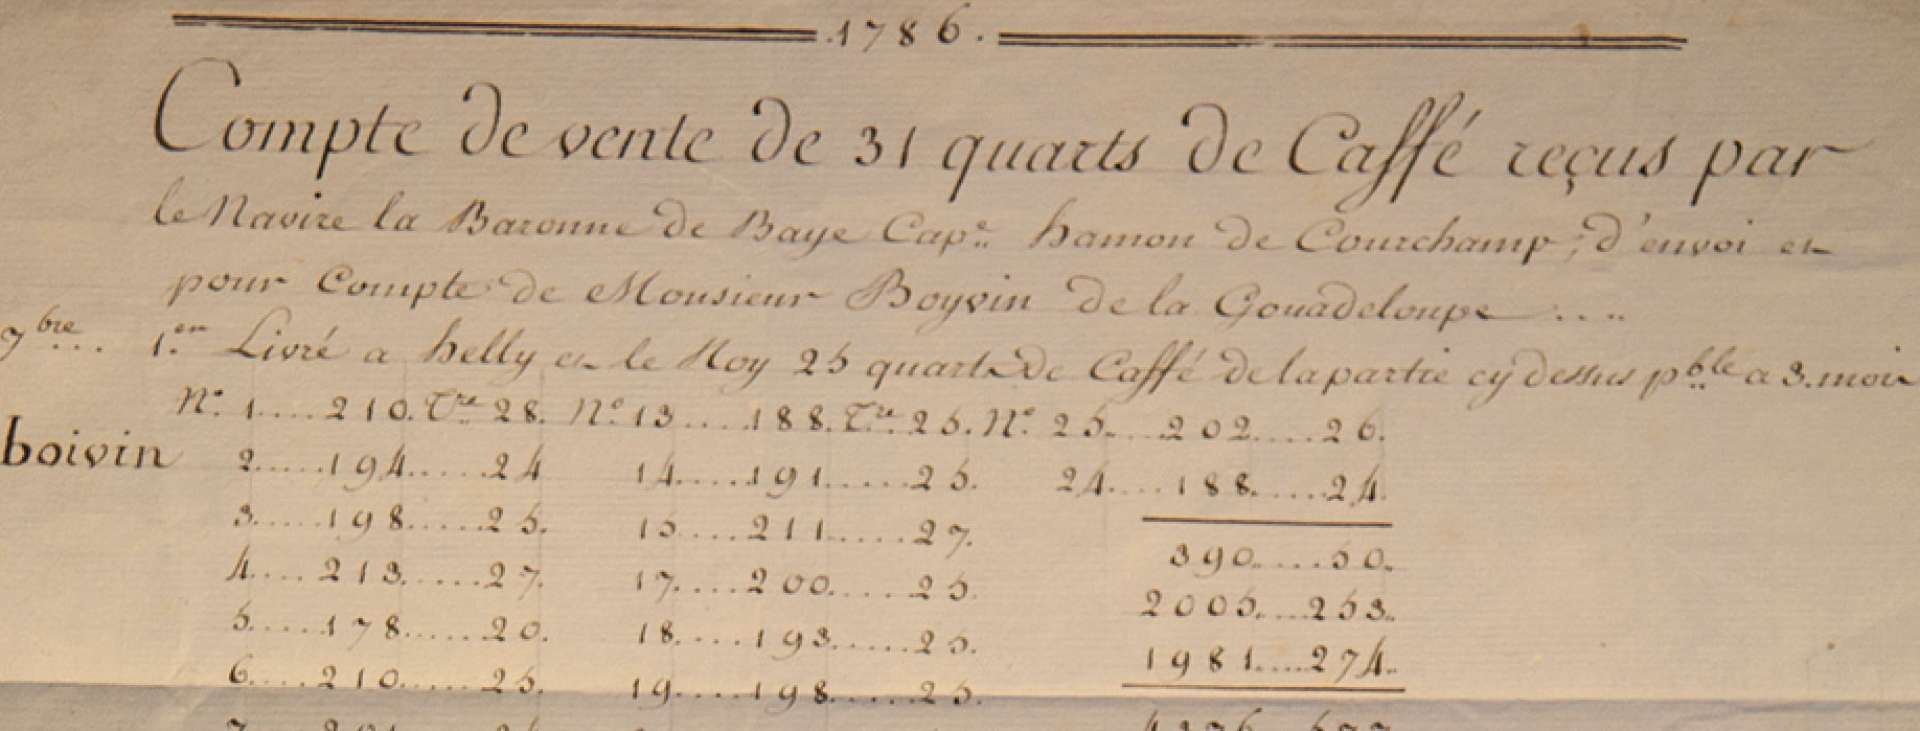 Compte de vente de 31 quarts de café reçus par le navire la Baronne de Baye, 1786 (49Z61)